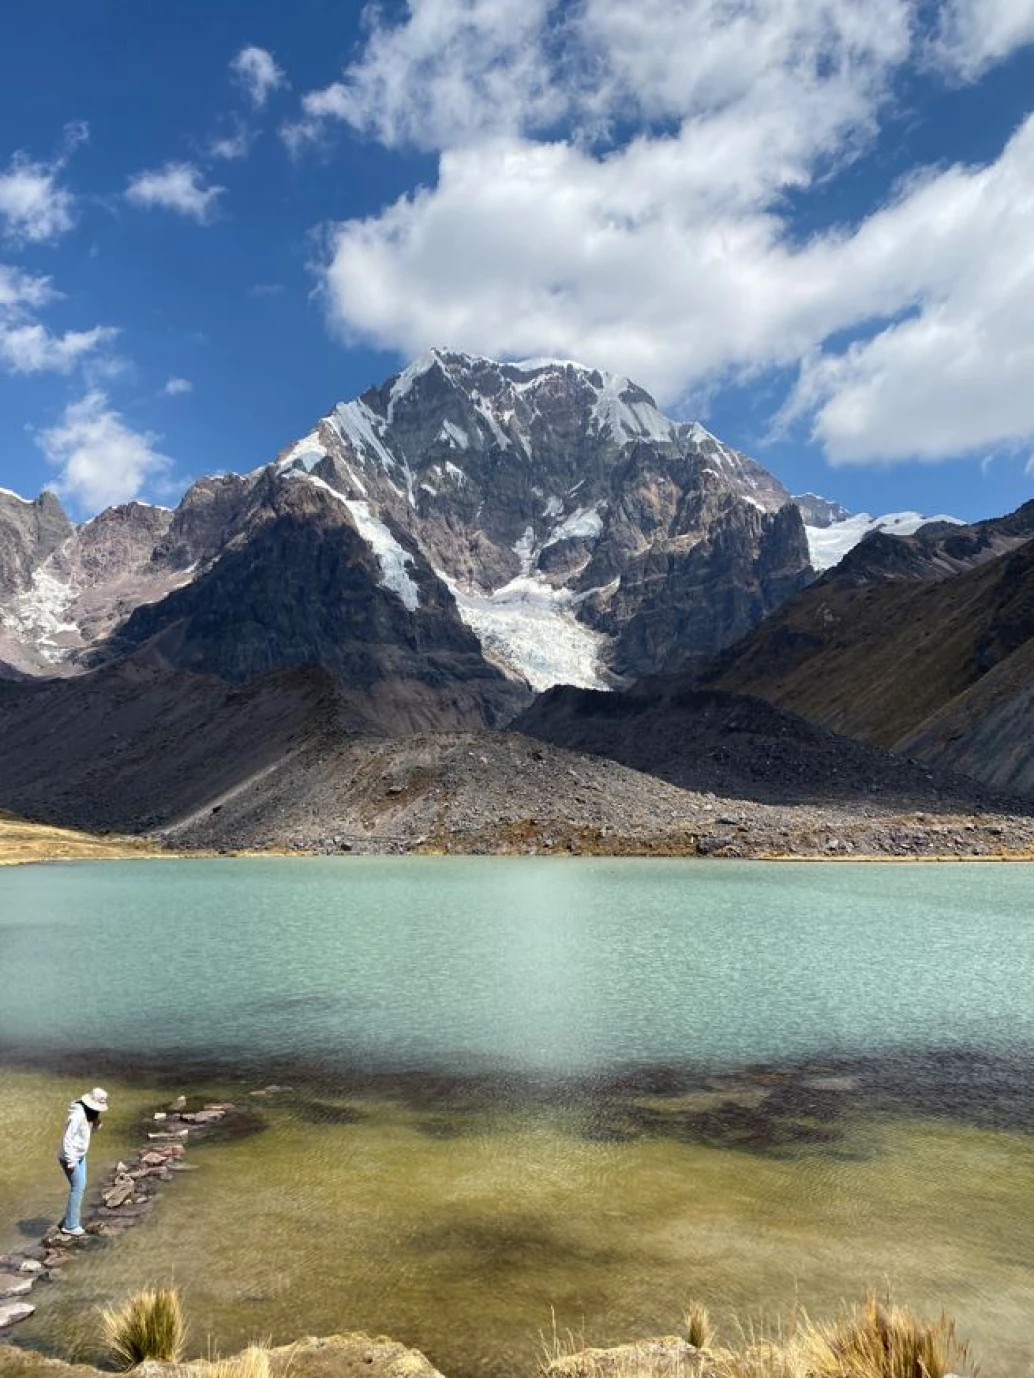 Vista panorâmica de uma lagoa azul, com uma mulher em pé sobre pedras no canto esquerdo. Ao fundo, montanhas com algumas partes cobertas por neve, na região dos Andes no Peru.